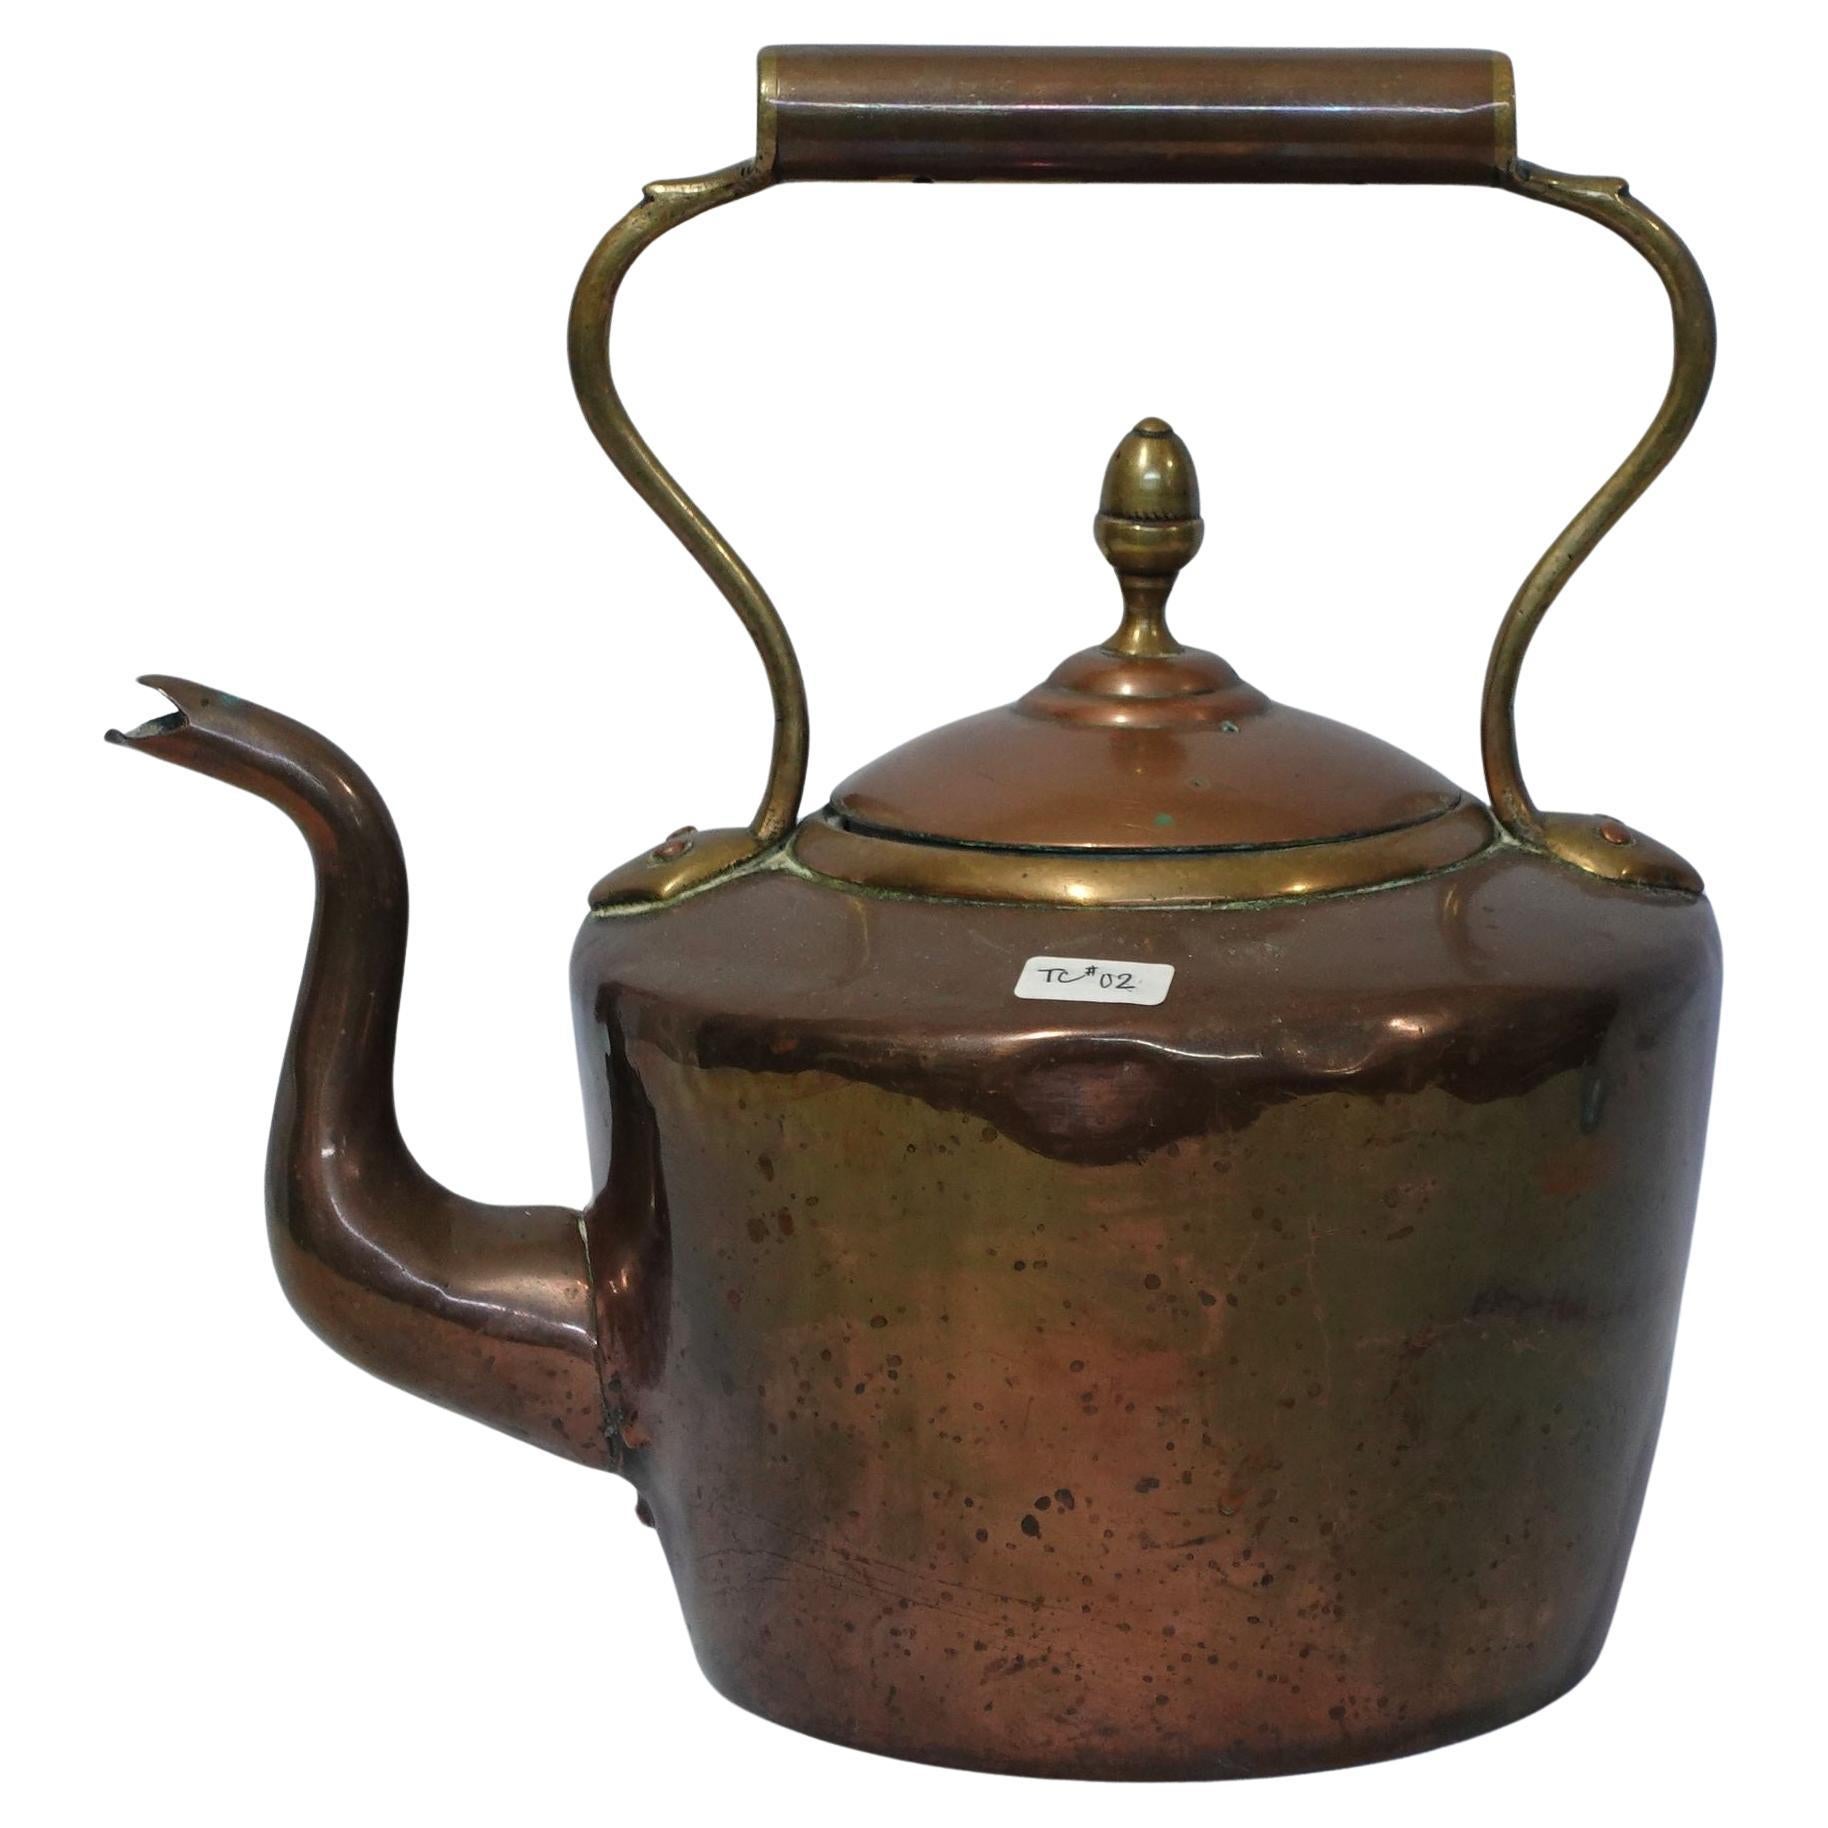 Antique A Large/Heavy English Copper Tea Kettle, TC#02 For Sale